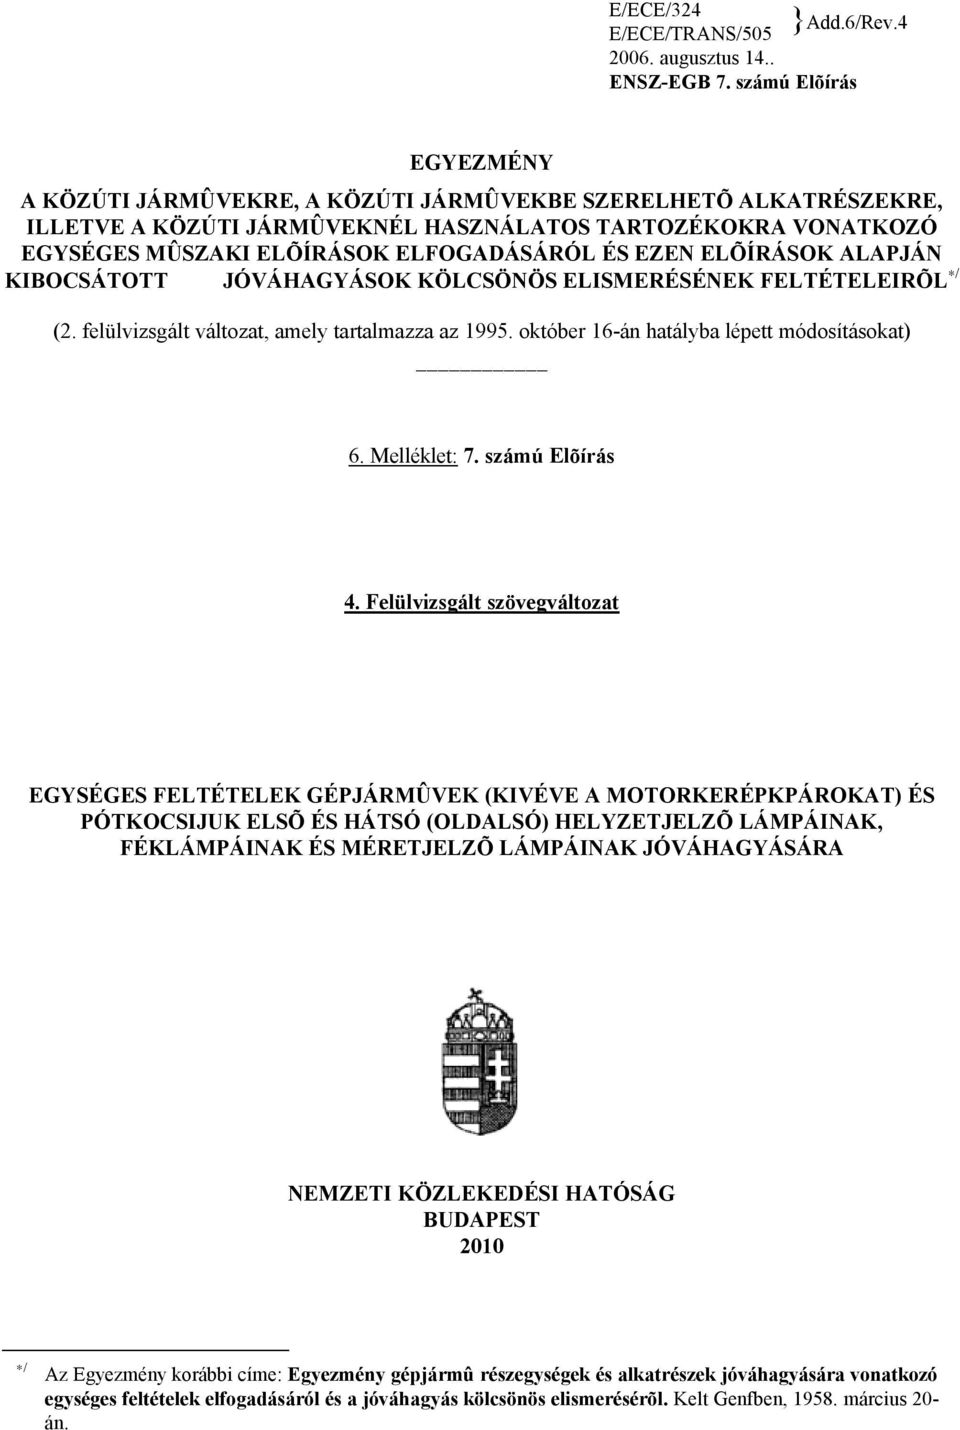 EZEN ELÕÍRÁSOK ALAPJÁN KIBOCSÁTOTT JÓVÁHAGYÁSOK KÖLCSÖNÖS ELISMERÉSÉNEK FELTÉTELEIRÕL / (2. felülvizsgált változat, amely tartalmazza az 1995. október 16-án hatályba lépett módosításokat) 6.